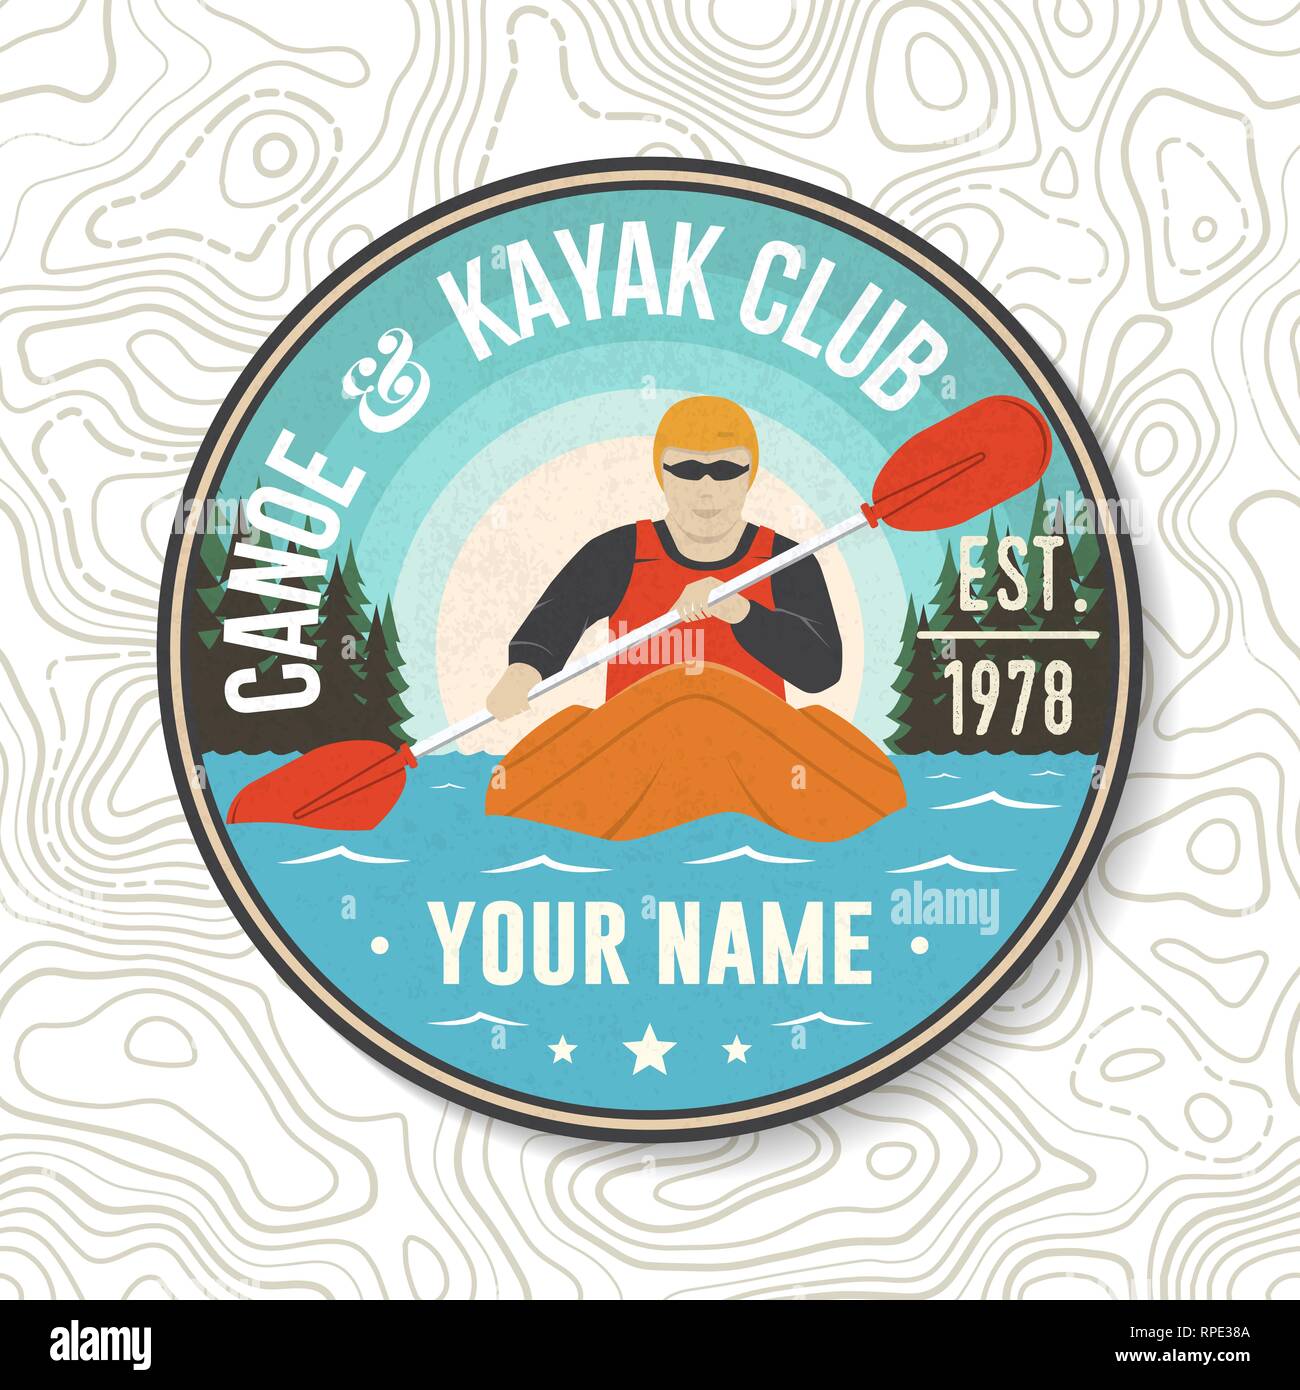 Canoa e Kayak Club patch. Vettore. Concetto di t-shirt, stampare il timbro o il raccordo a t. Vintage design tipografia con silhouette di kayaker. Extreme sport d'acqua. Outdoor adventure emblemi, kayak patch. Illustrazione Vettoriale